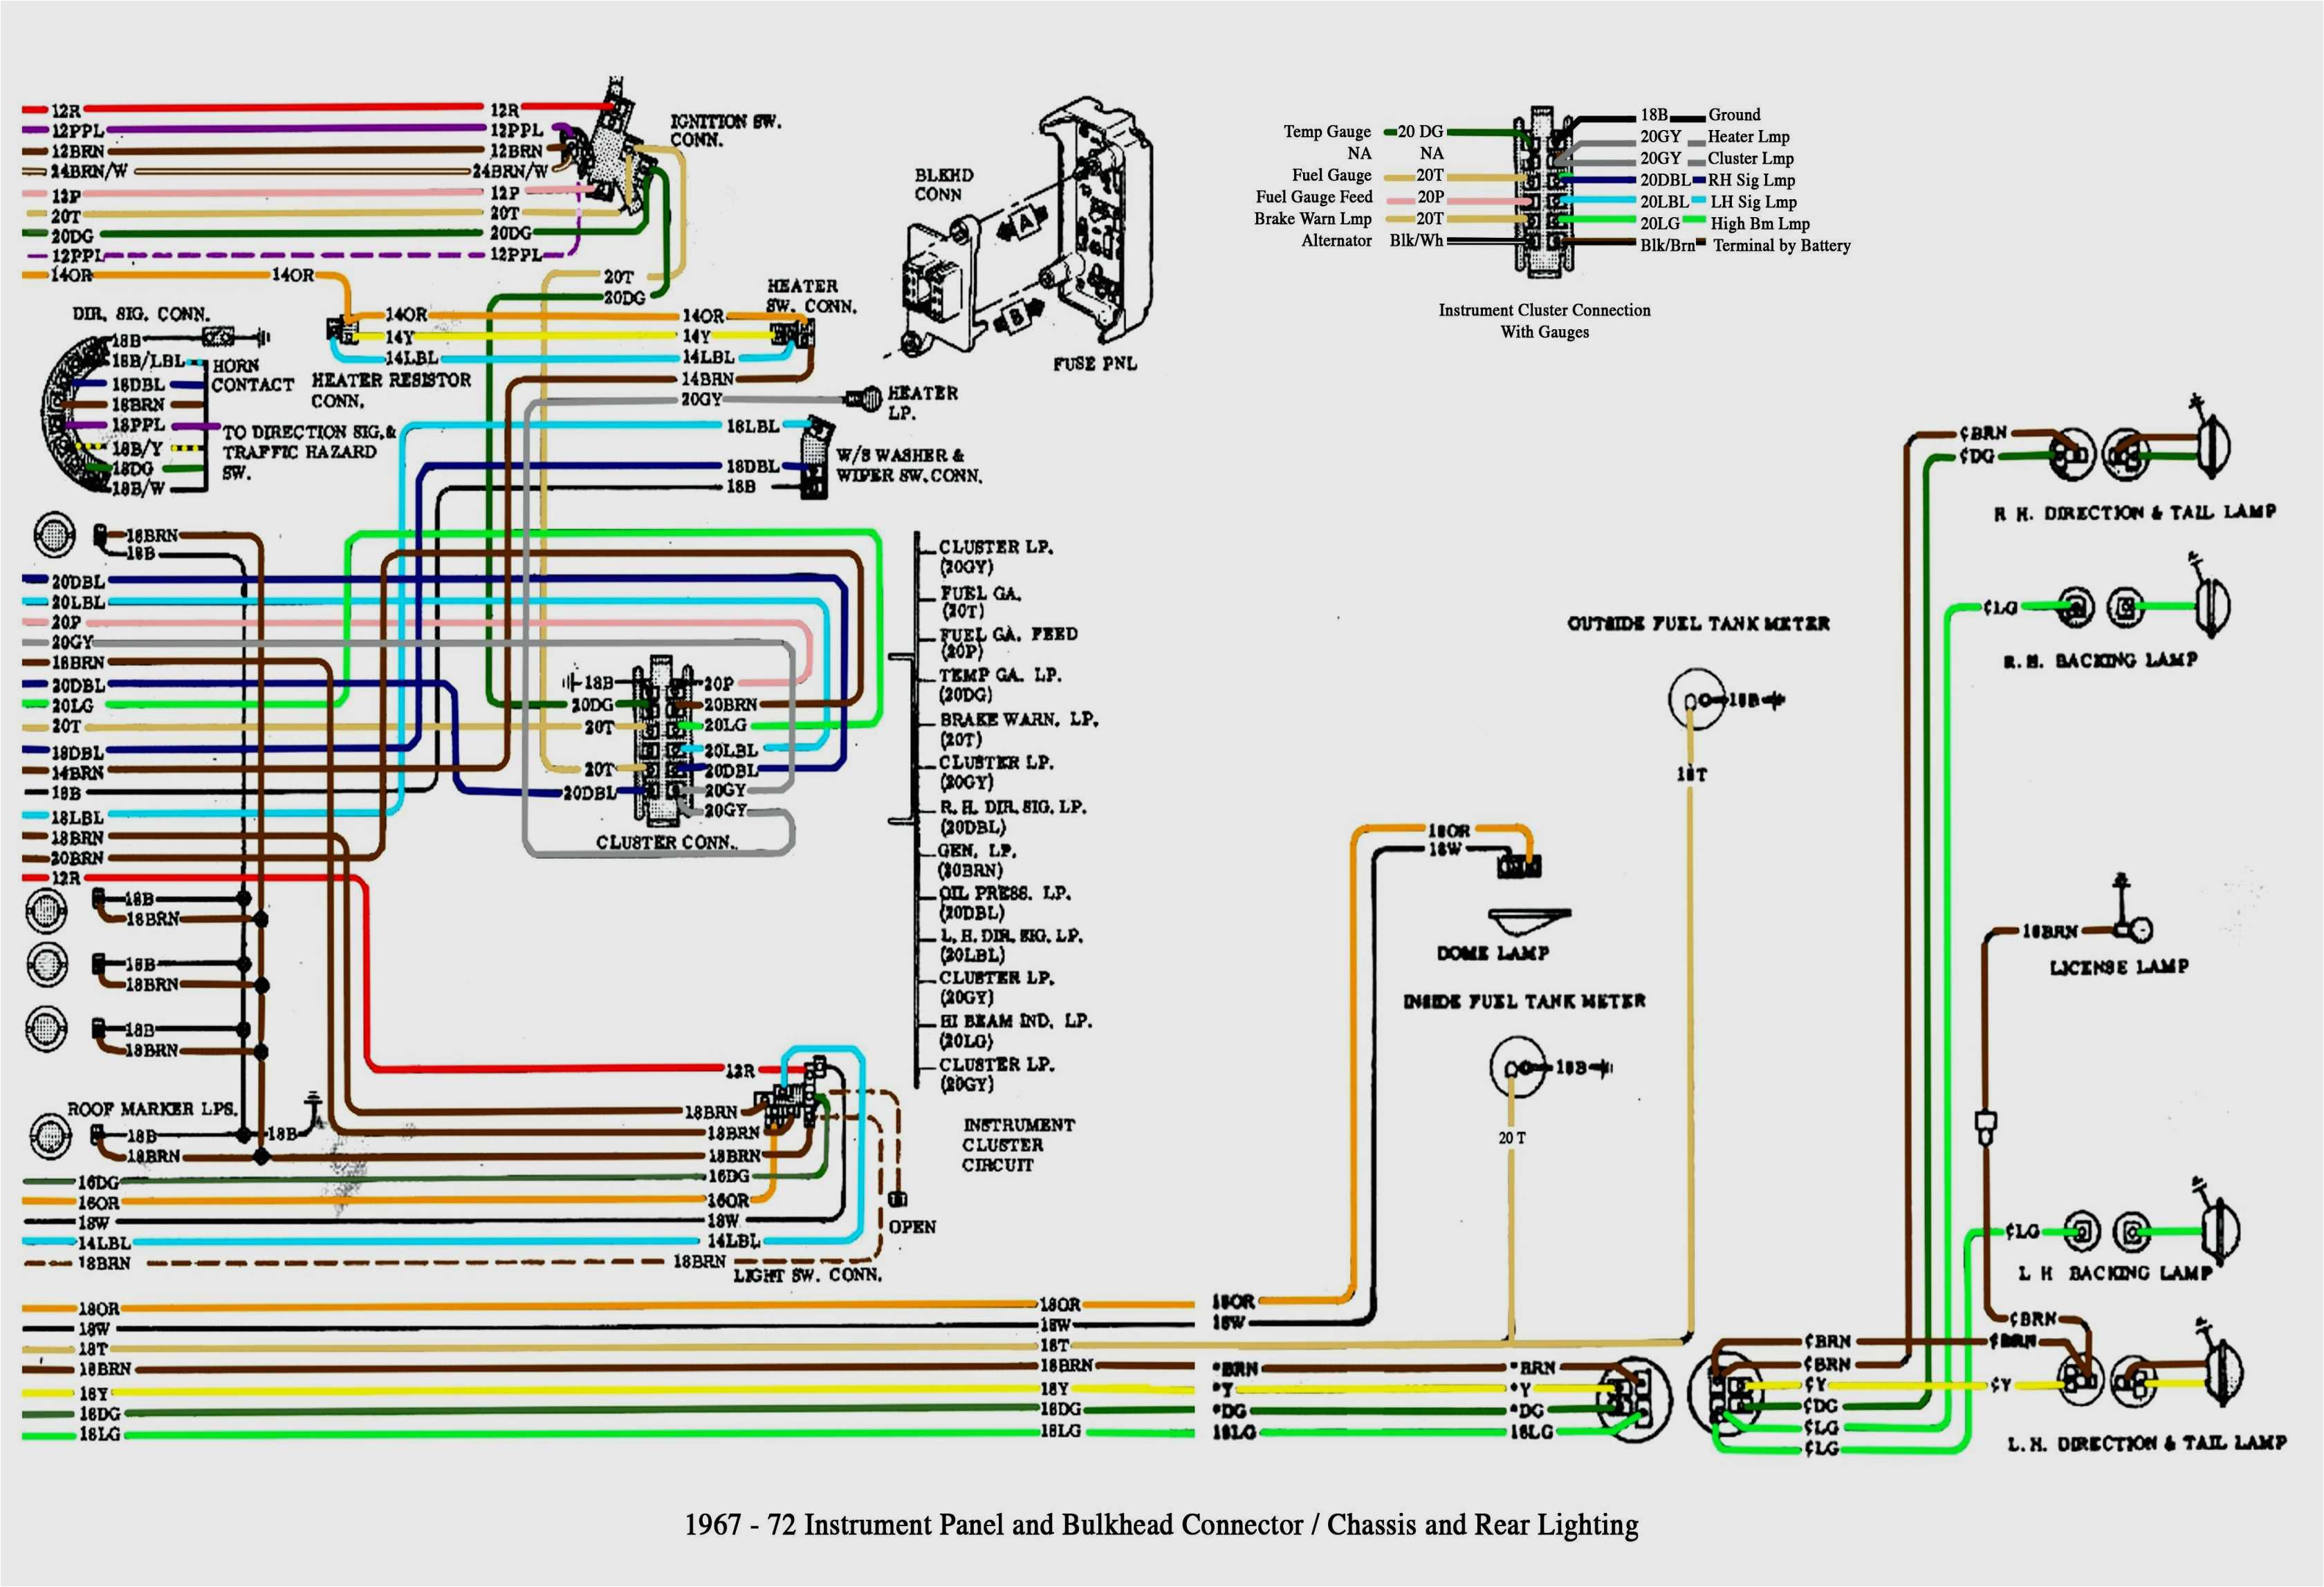 wiring diagram 2005 chevy silverado 1500 fuel system free image 2002 chevy silverado ke line diagram